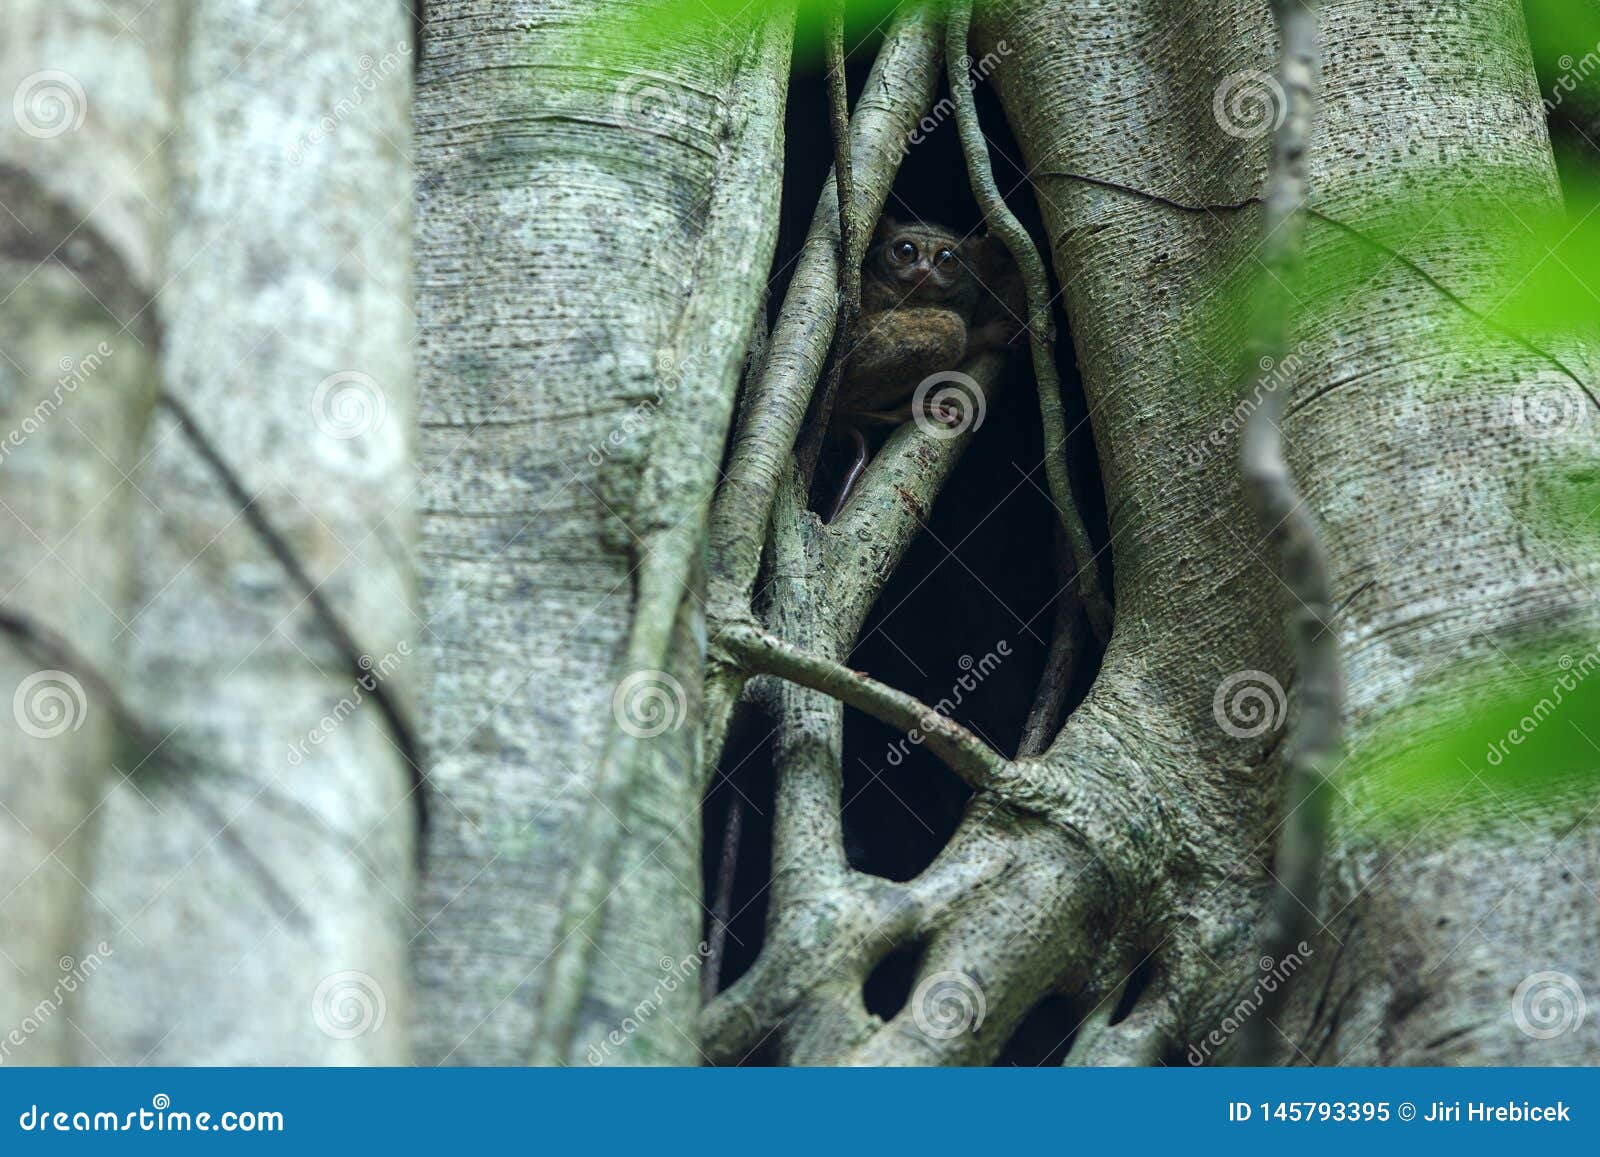 Φασματικό Tarsier, φάσμα Tarsius, πορτρέτο των σπάνιων ενδημικών νυκτερινών θηλαστικών, μικρός χαριτωμένος αρχιεπίσκοπος στο μεγάλο δέντρο ficus στη ζούγκλα, εθνικό πάρκο Tangkoko, Sulawesi, Ινδονησία, Ασία